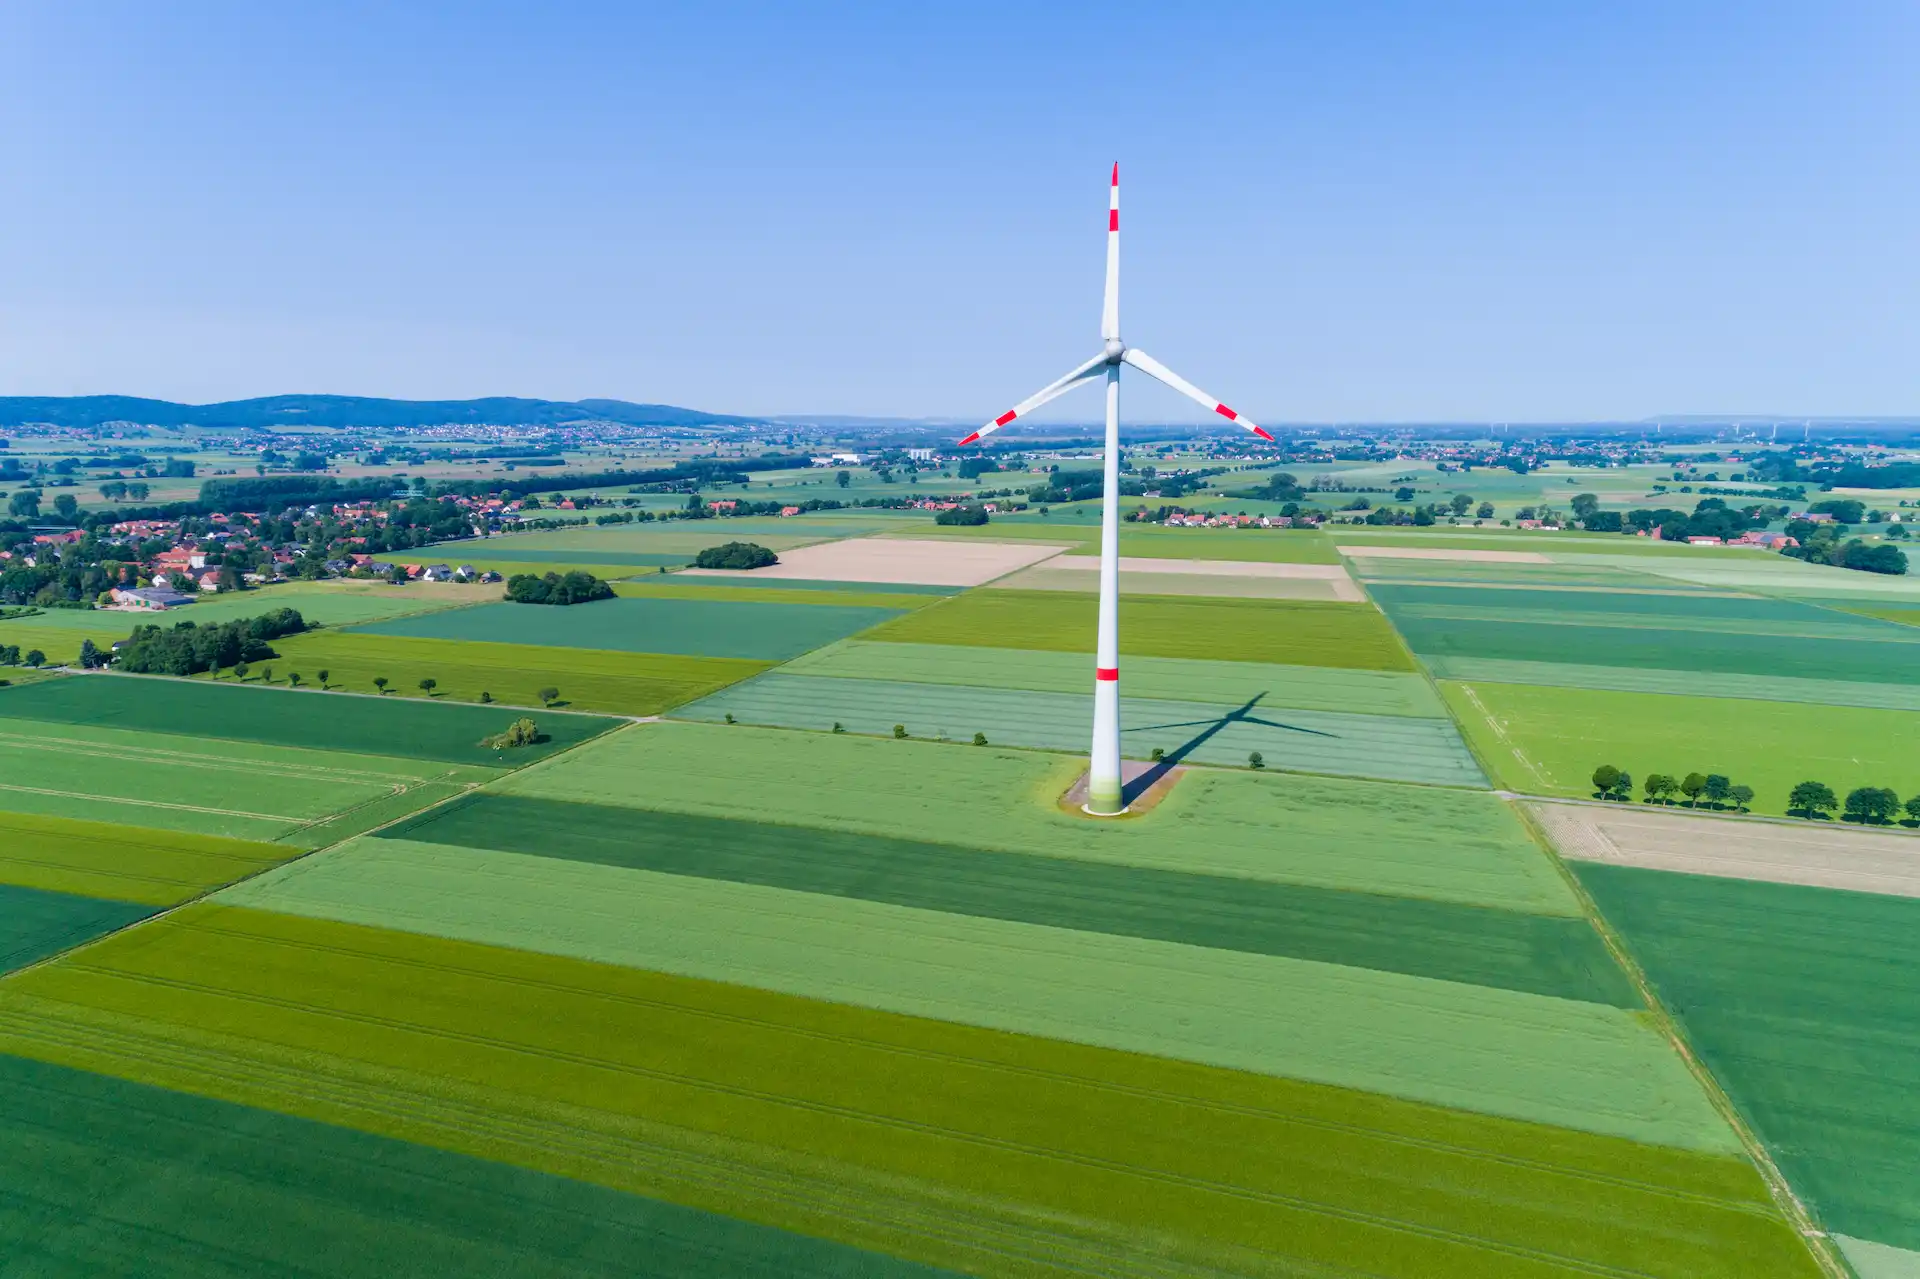 Windenergie auf landwirtschaftlichen Flächen: Chancen & Risiken